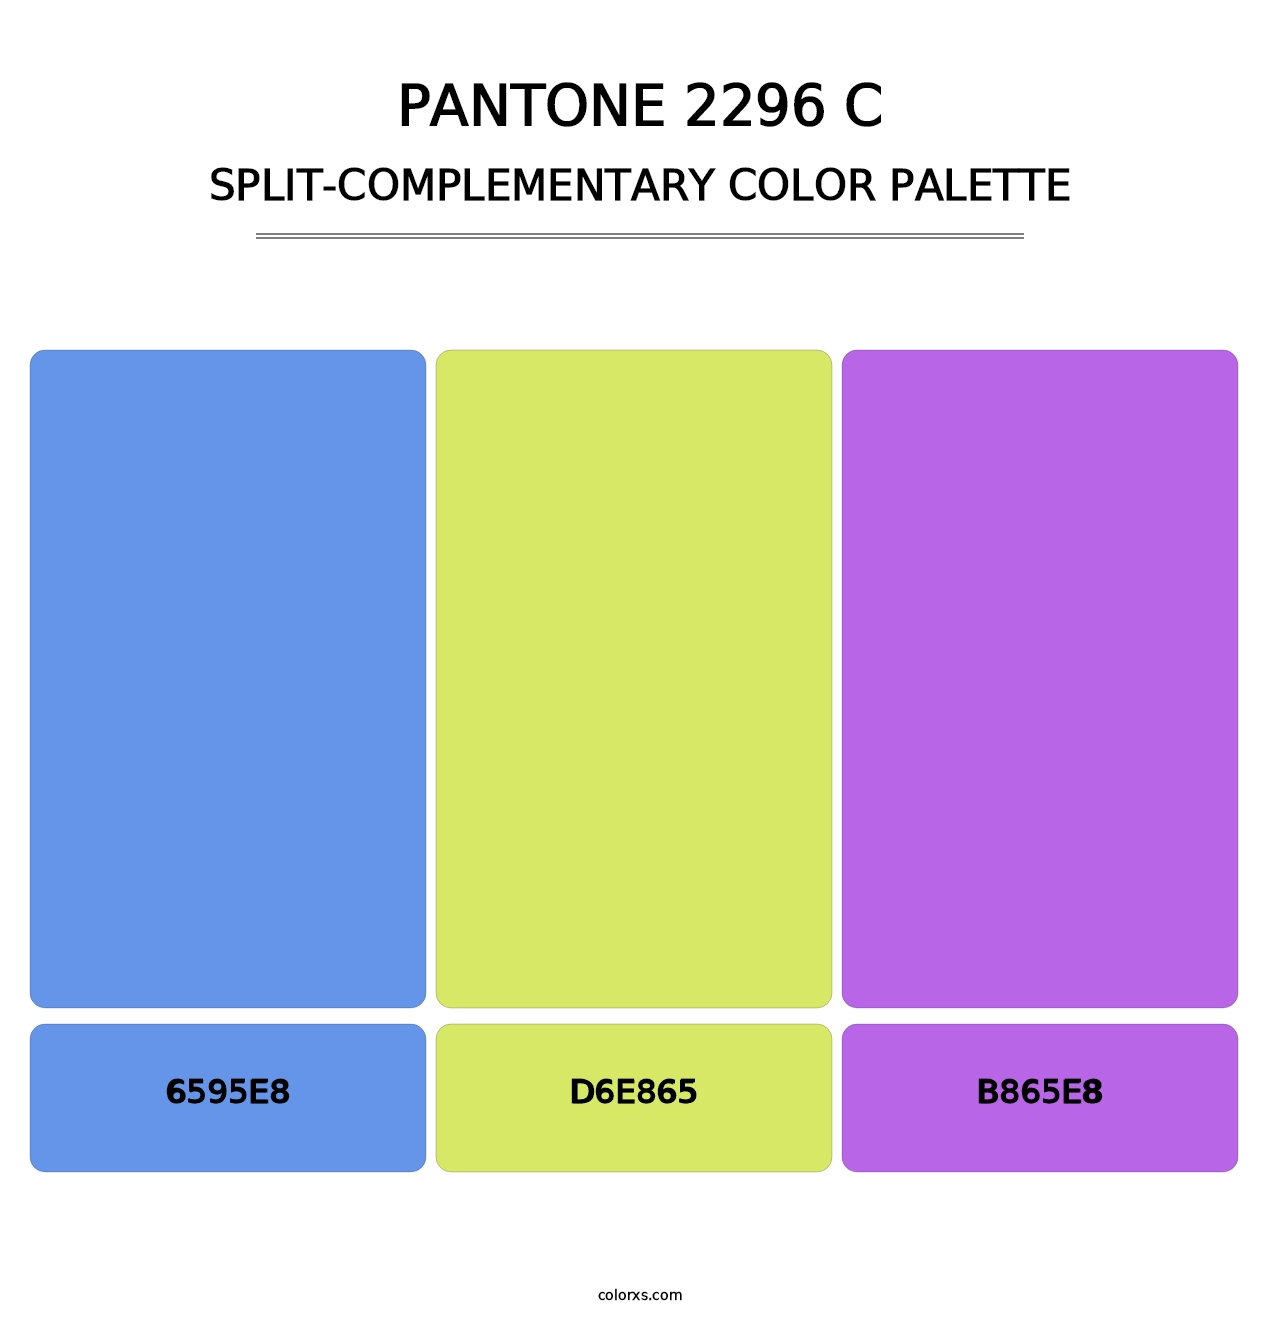 PANTONE 2296 C - Split-Complementary Color Palette